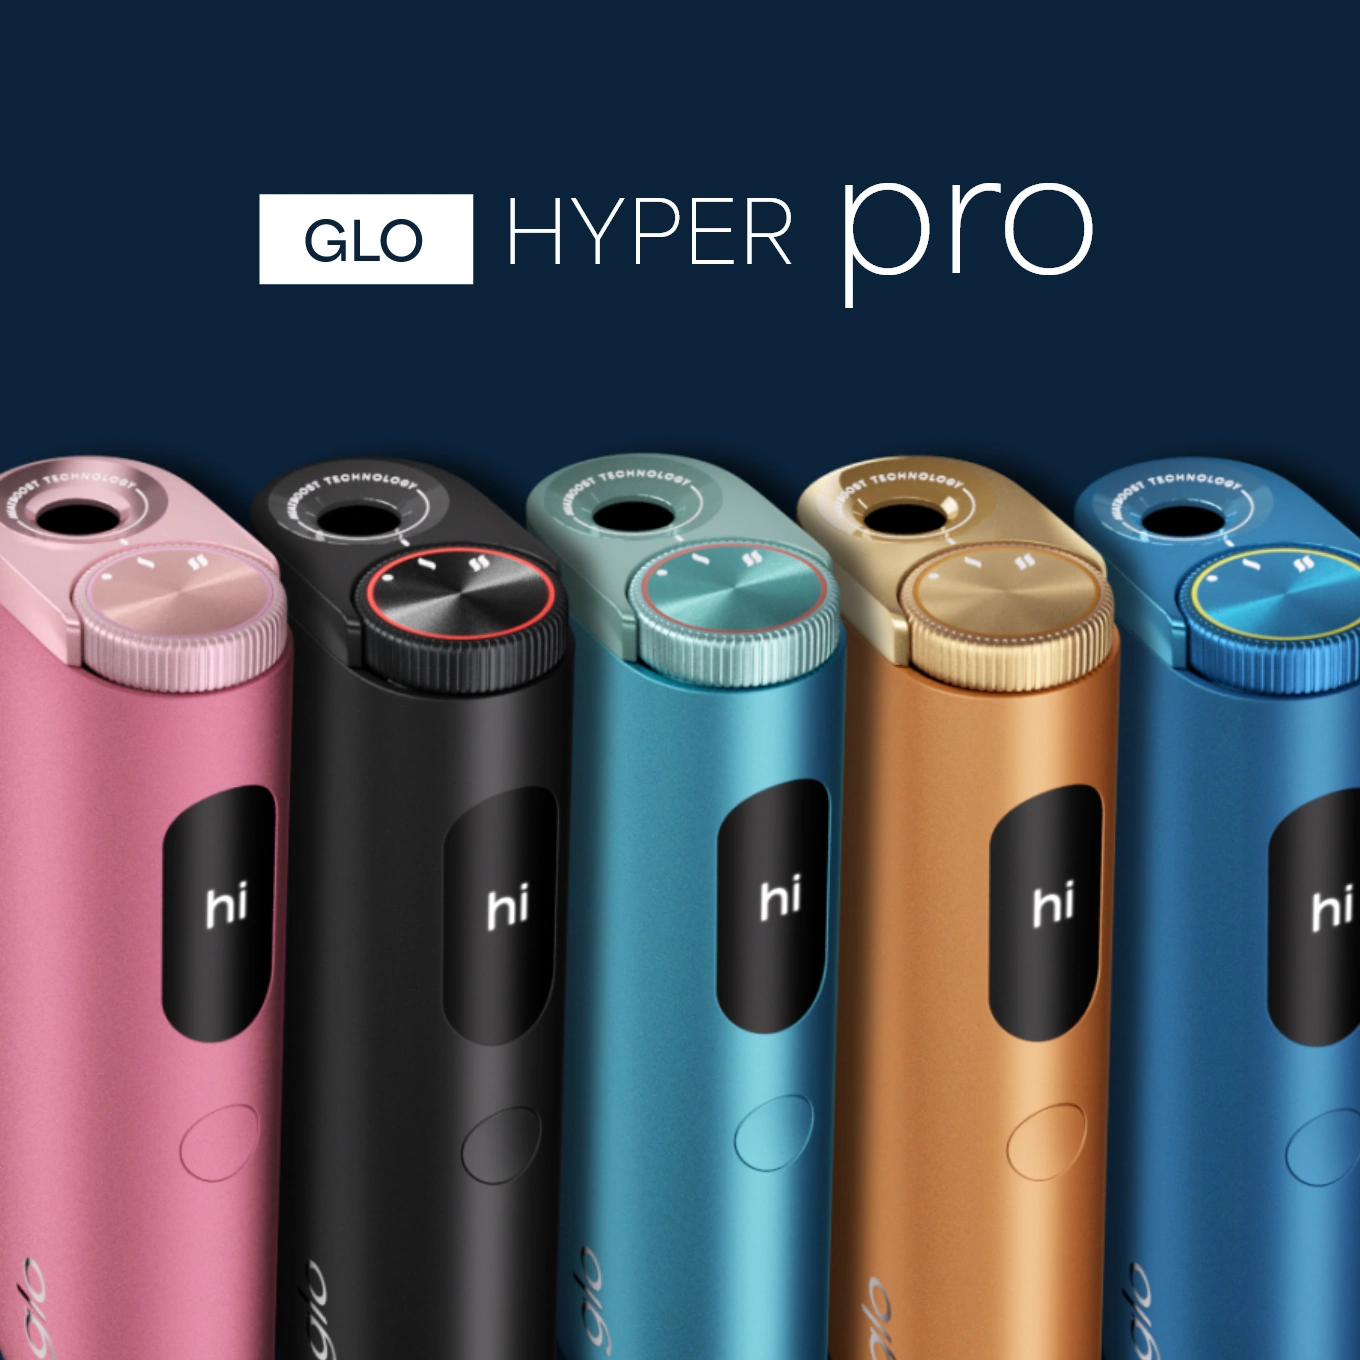 glo Hyper Pro Farbvariationen